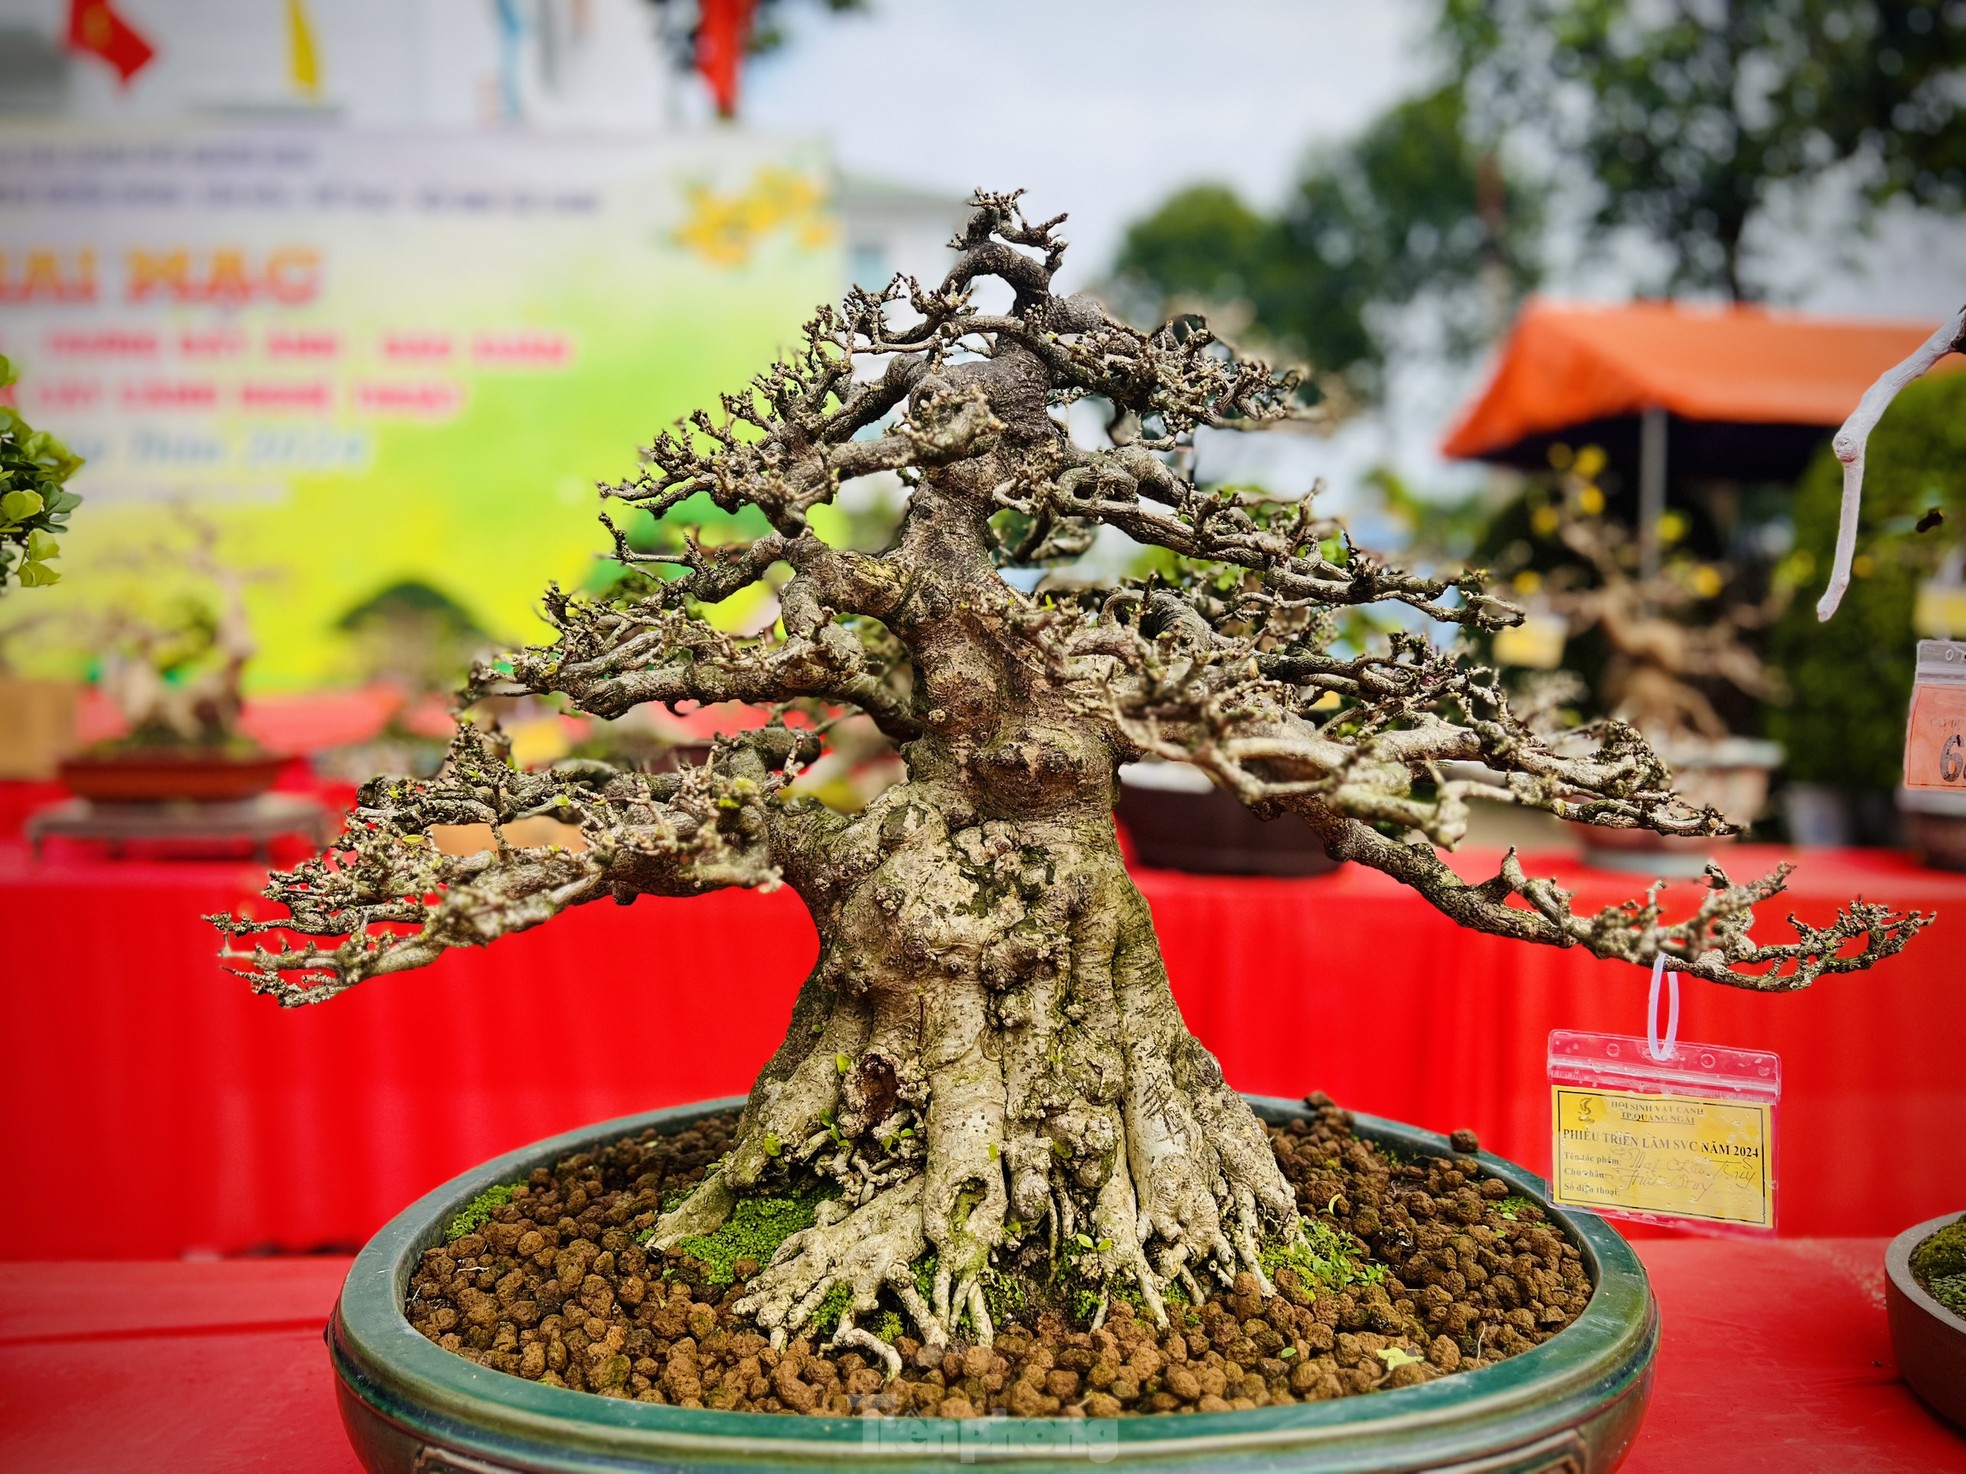 Dàn bonsai độc lạ, giá lên đến 500 triệu đồng ở Quảng Ngãi - Ảnh 9.